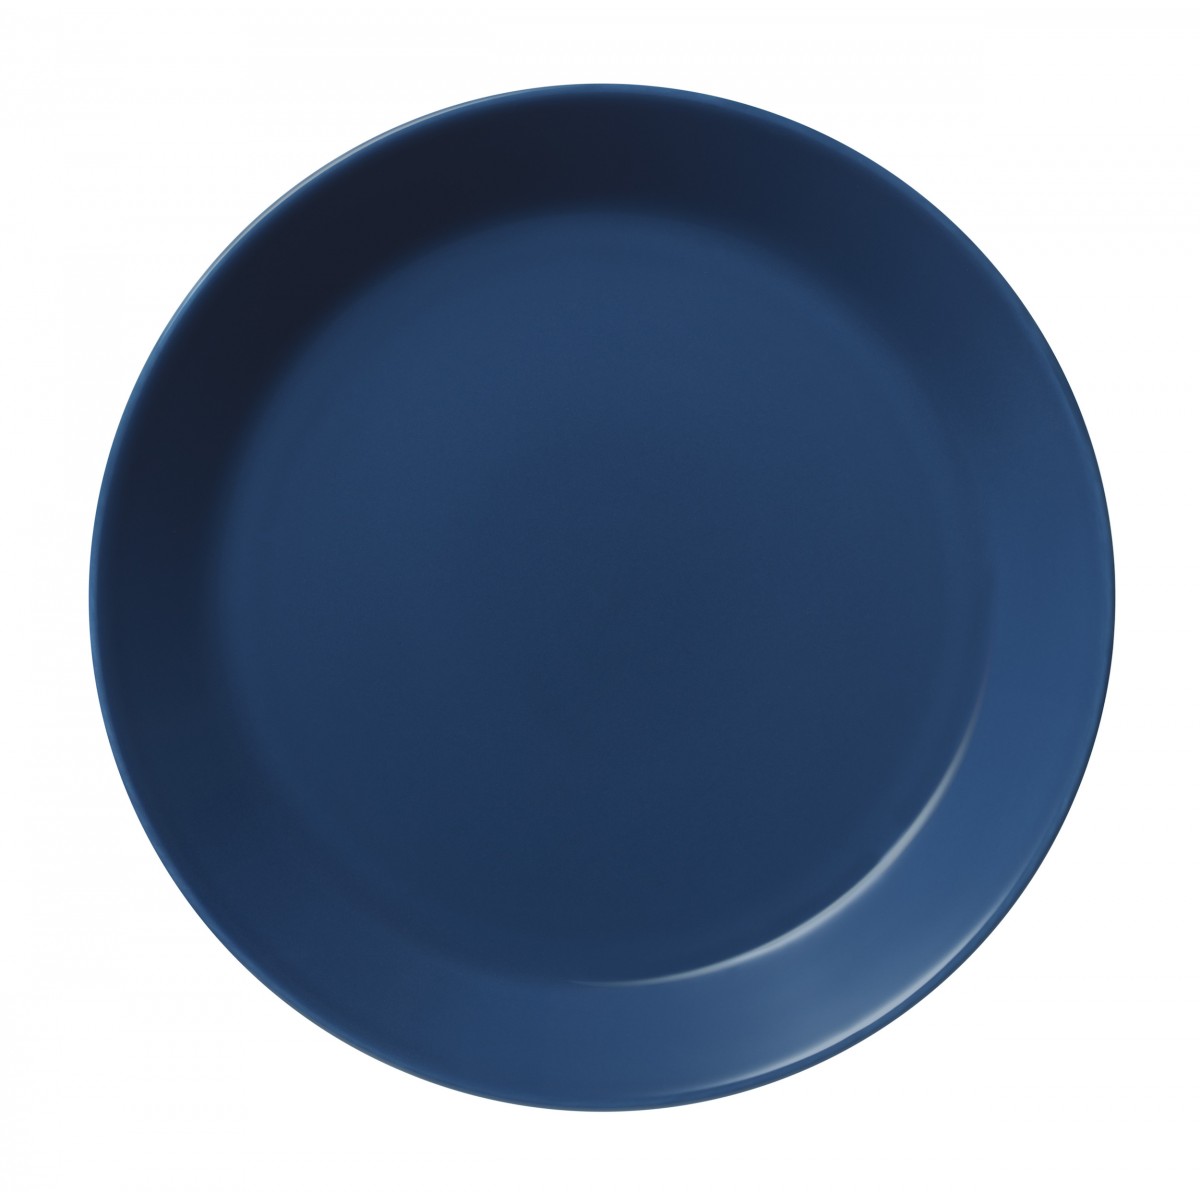 Ø26cm - Teema plate - vintage blue - 1062243